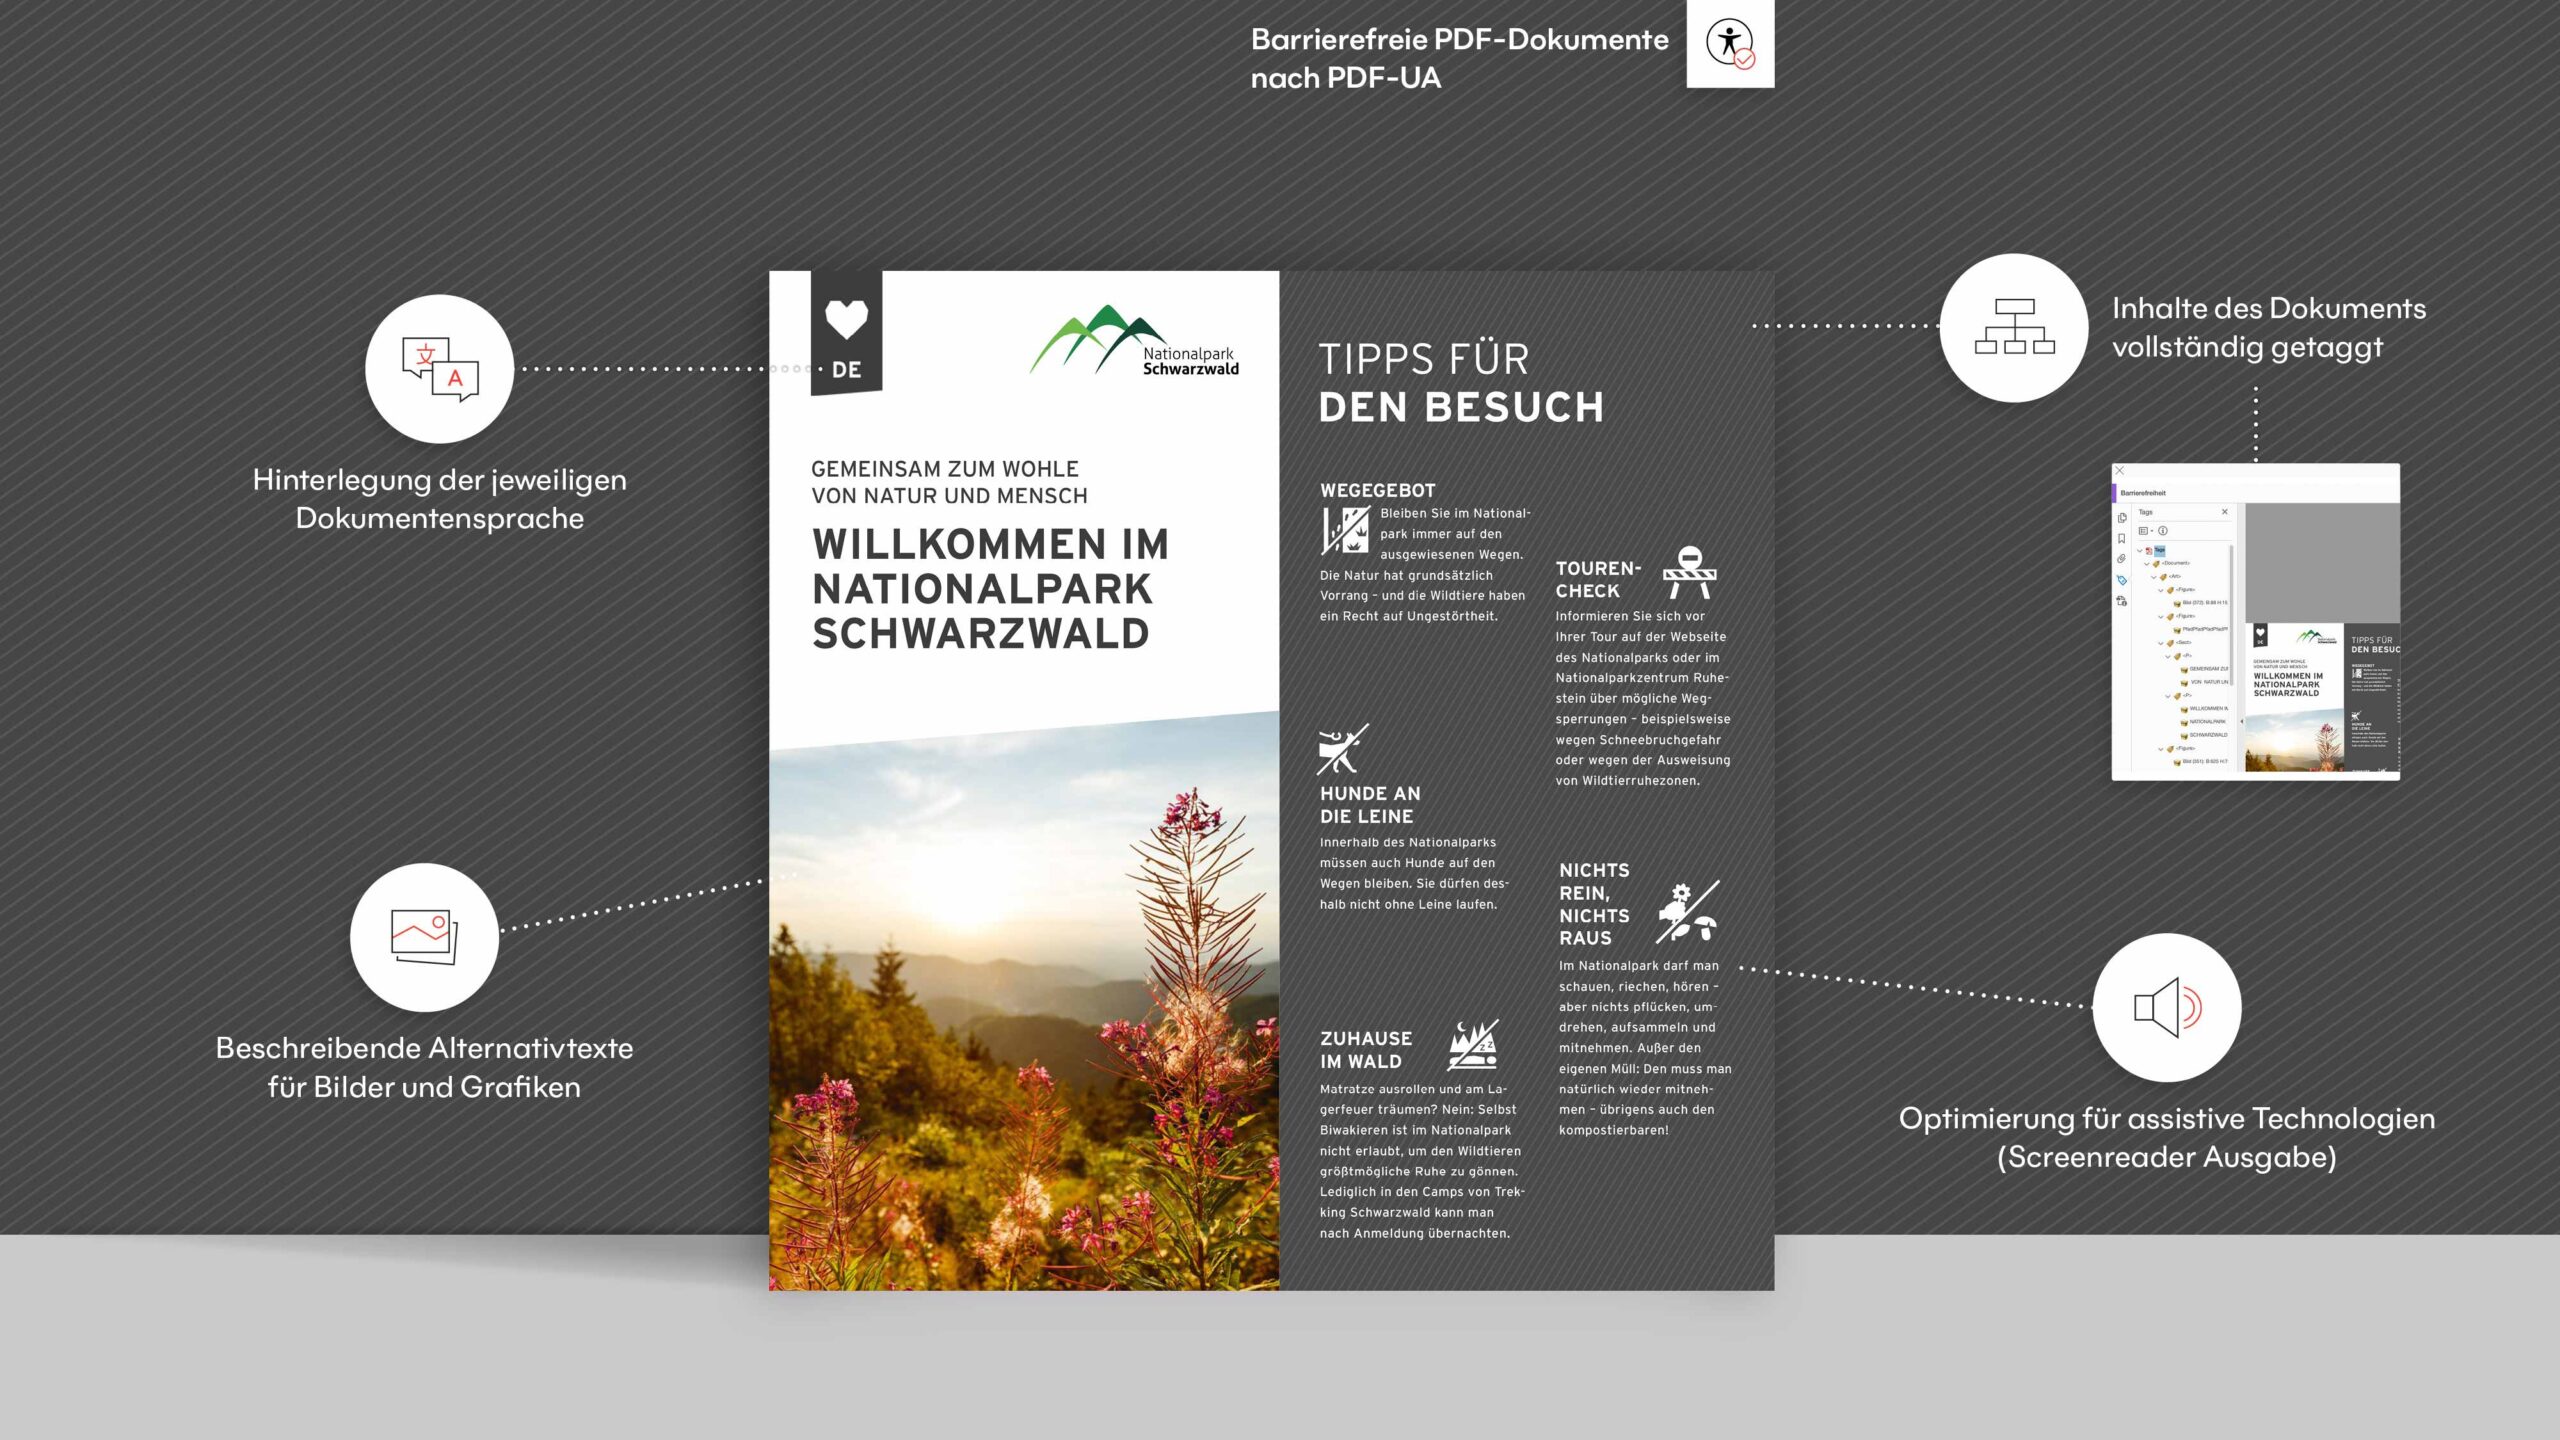 jungkommunikation_projekte_nationalpark_schwarzwald_barrierefreies_pdf_1920x1080